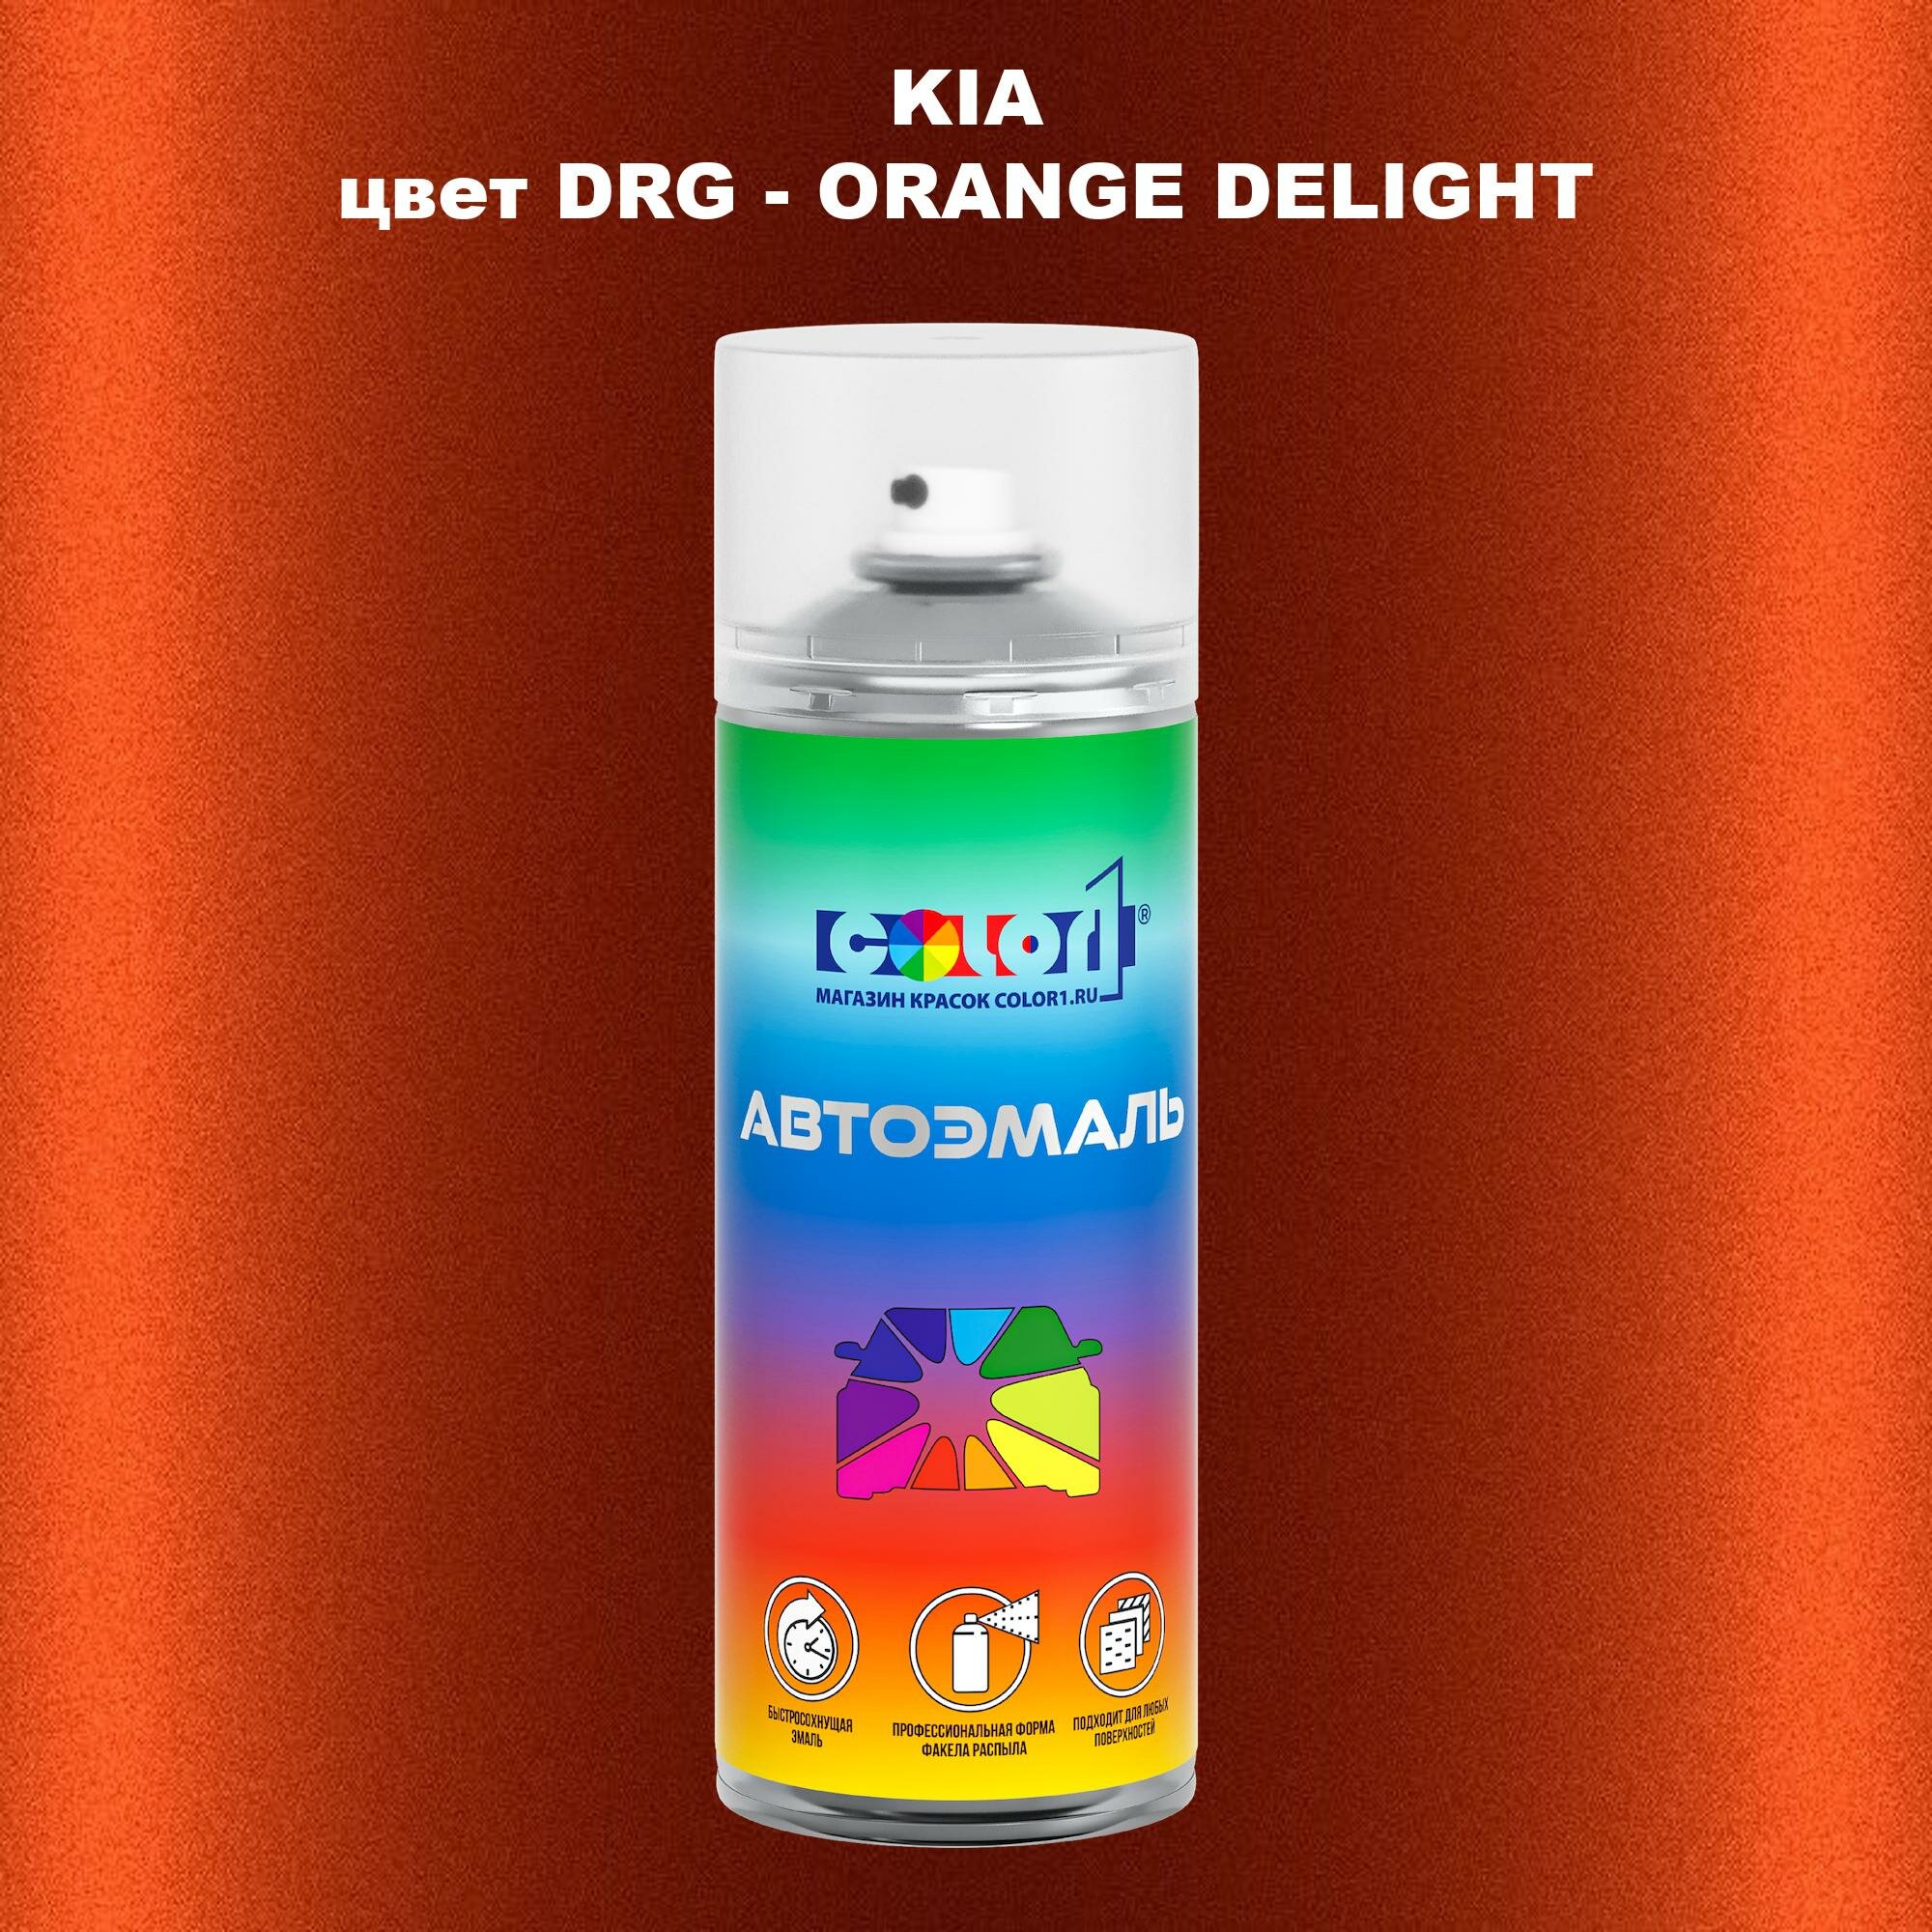 Аэрозольная краска COLOR1 для KIA цвет DRG - ORANGE DELIGHT